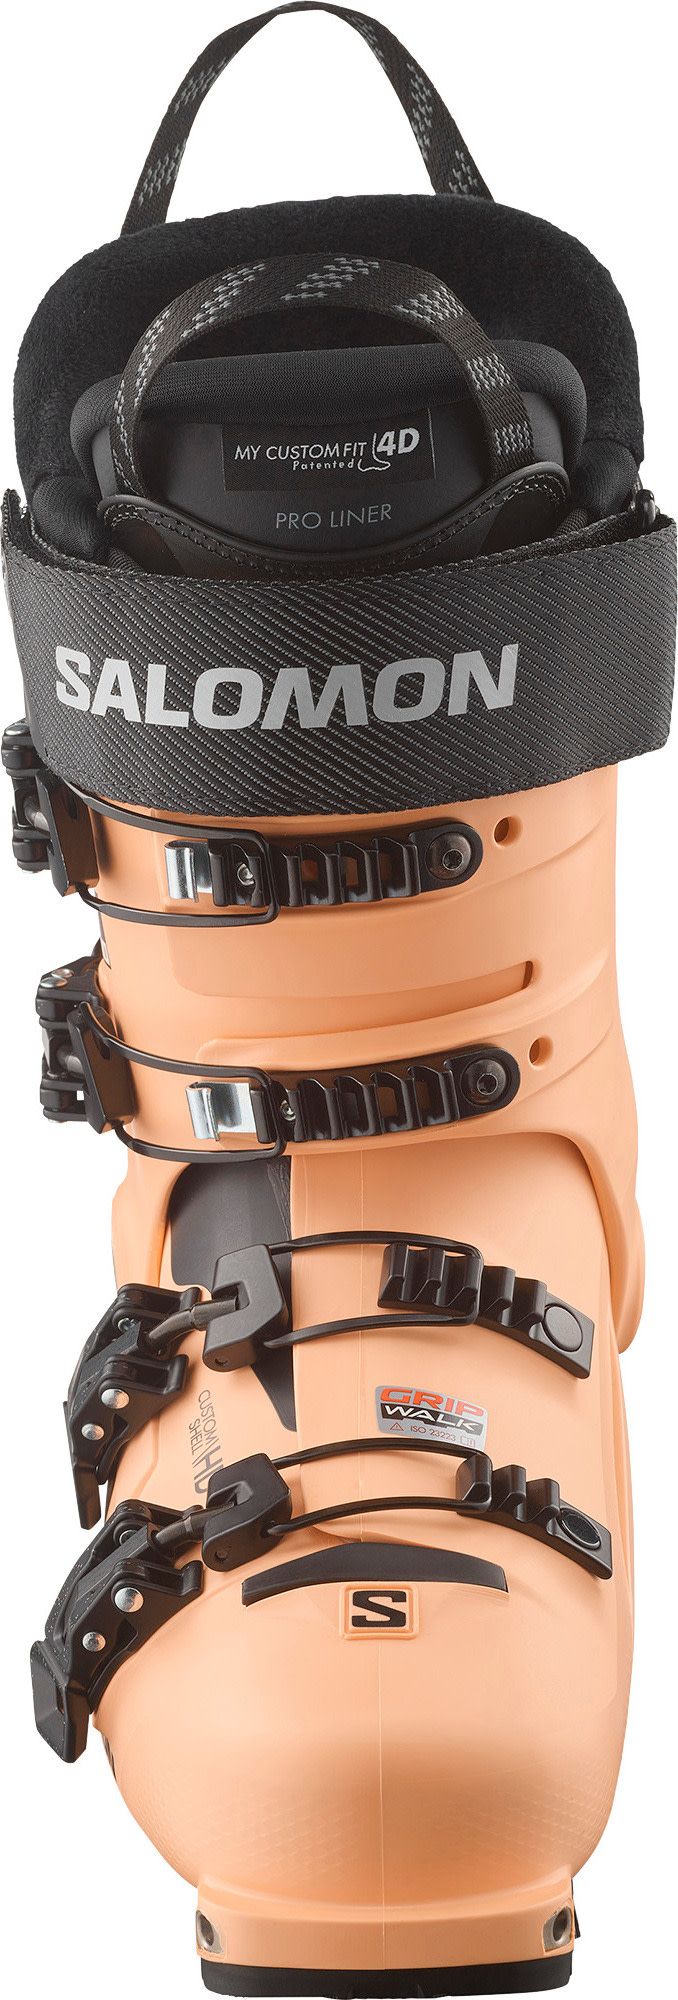 Salomon Women's Shift Pro 110 AT Beach Sand/Black/White Salomon